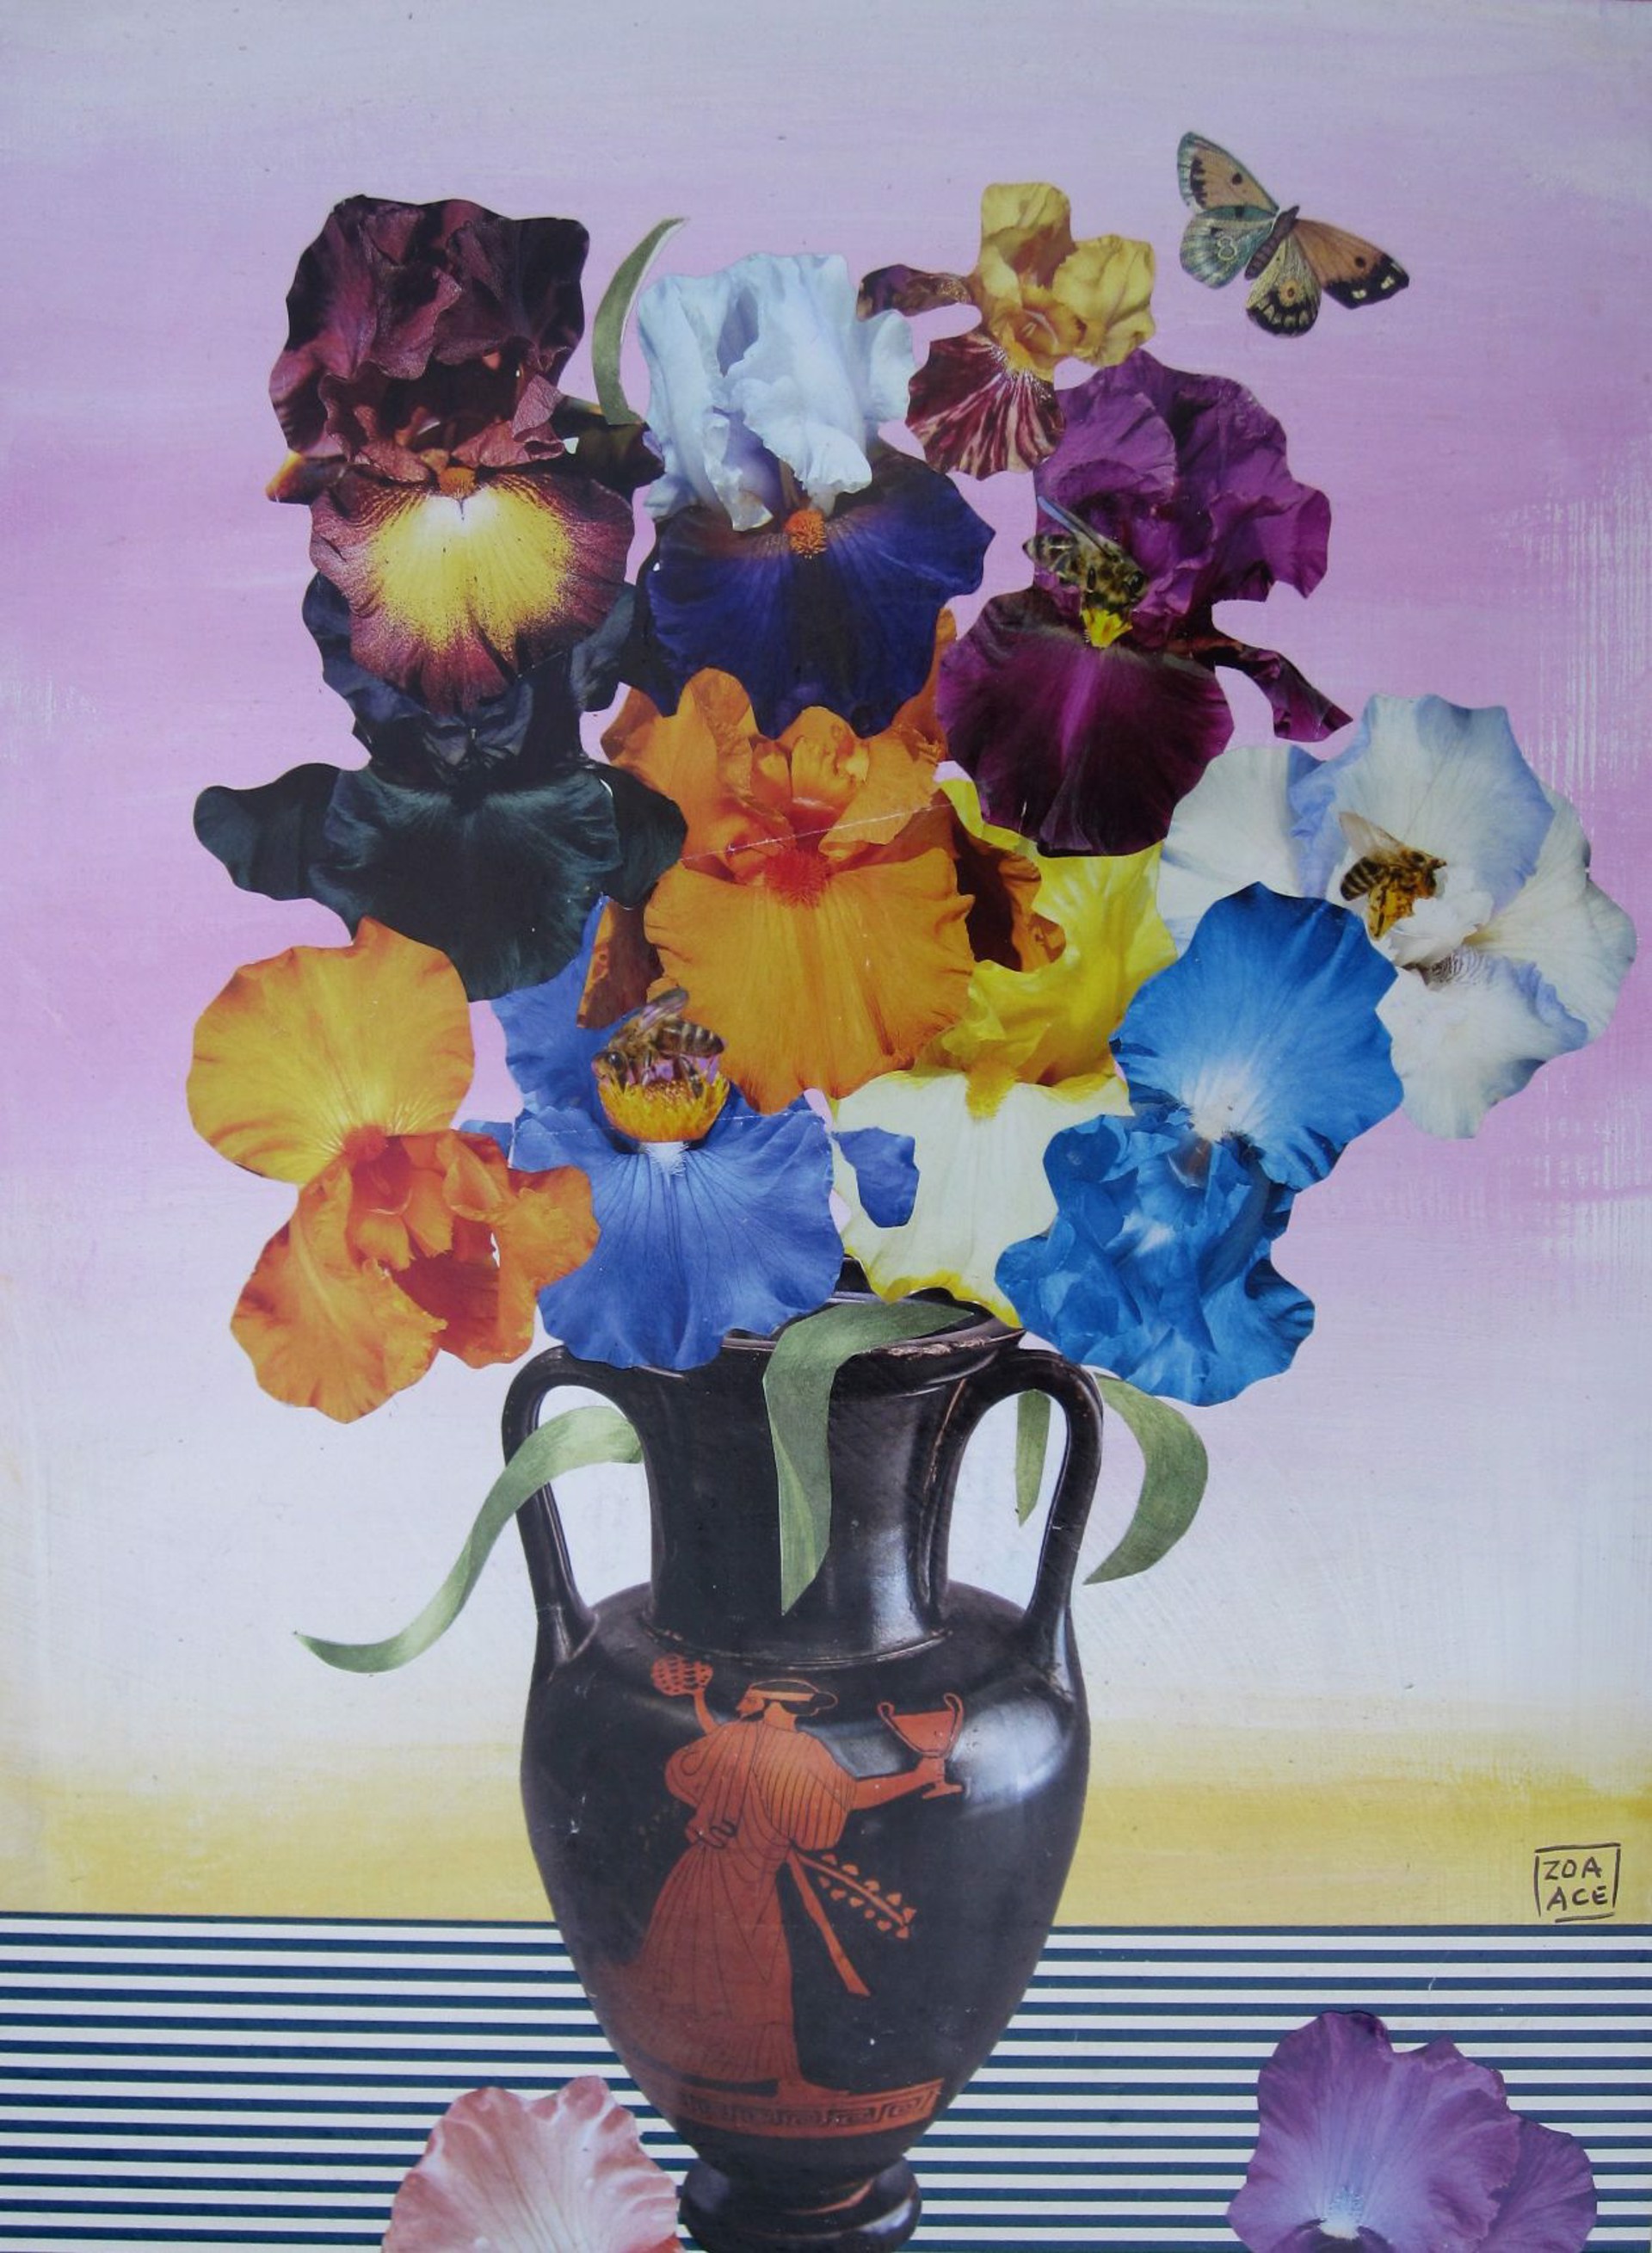 Iris in Greek Vase by Zoa Ace